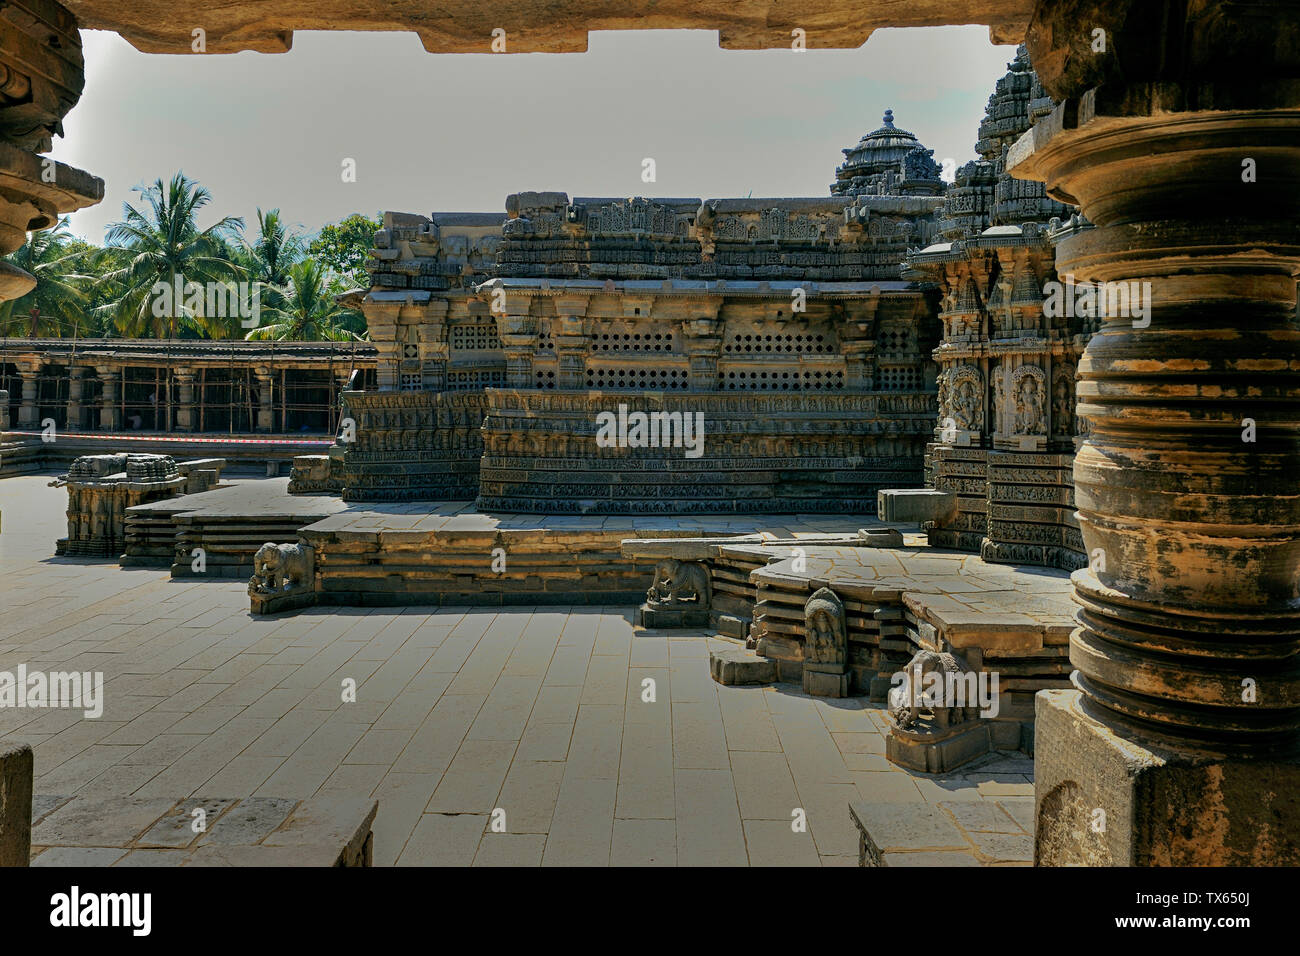 31 Okt 2009 Stein gemeißelt-1268 AD Hoysala Tempel am Architecture-Kesava Somnathpur Dorf 45 km von Mysore Karnataka, Indien Stockfoto